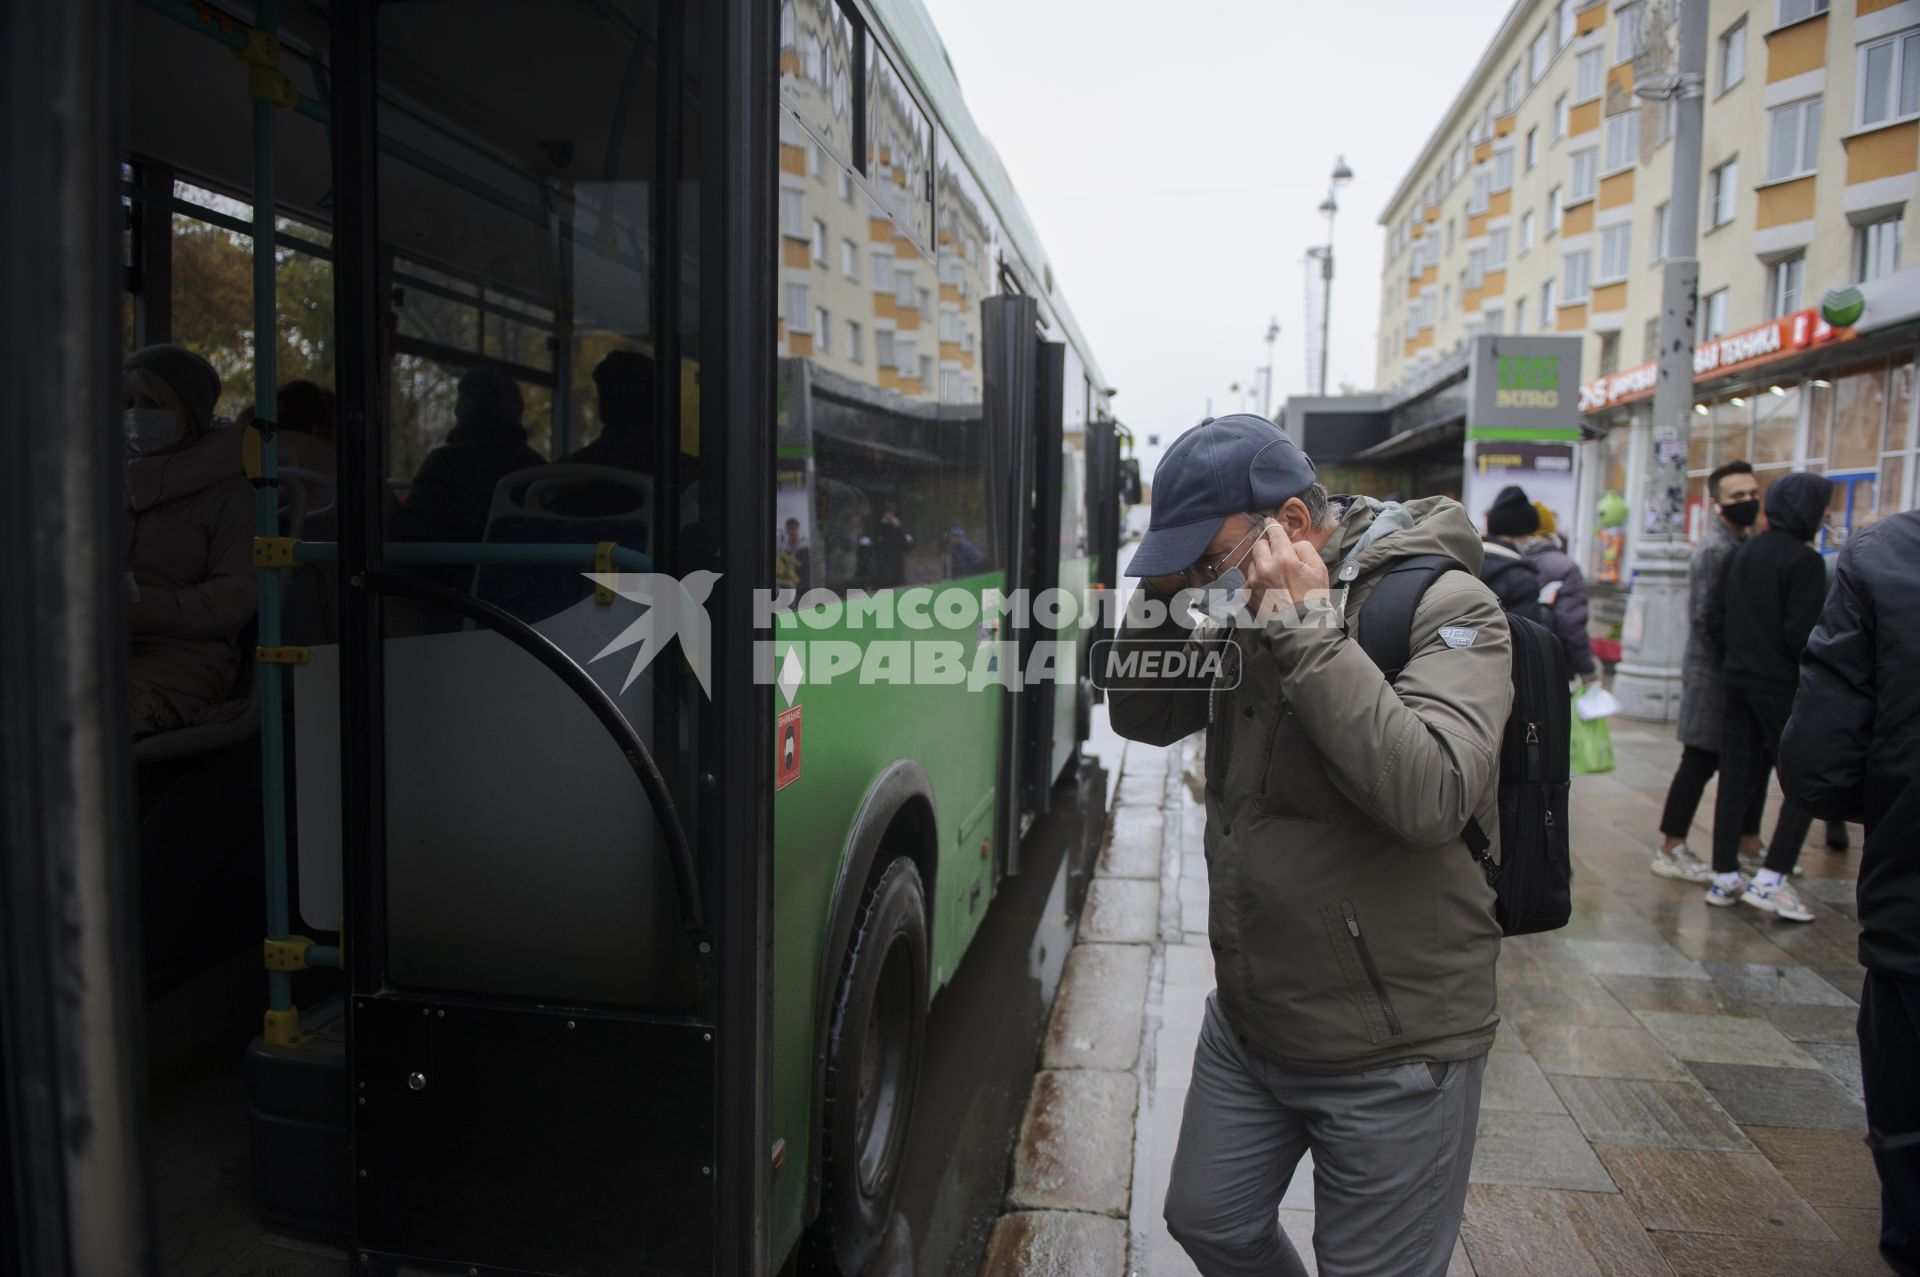 Екатеринбург. Пассажиры в защитных масках и без них в общественном транспорте во время ужесточения масочного режима